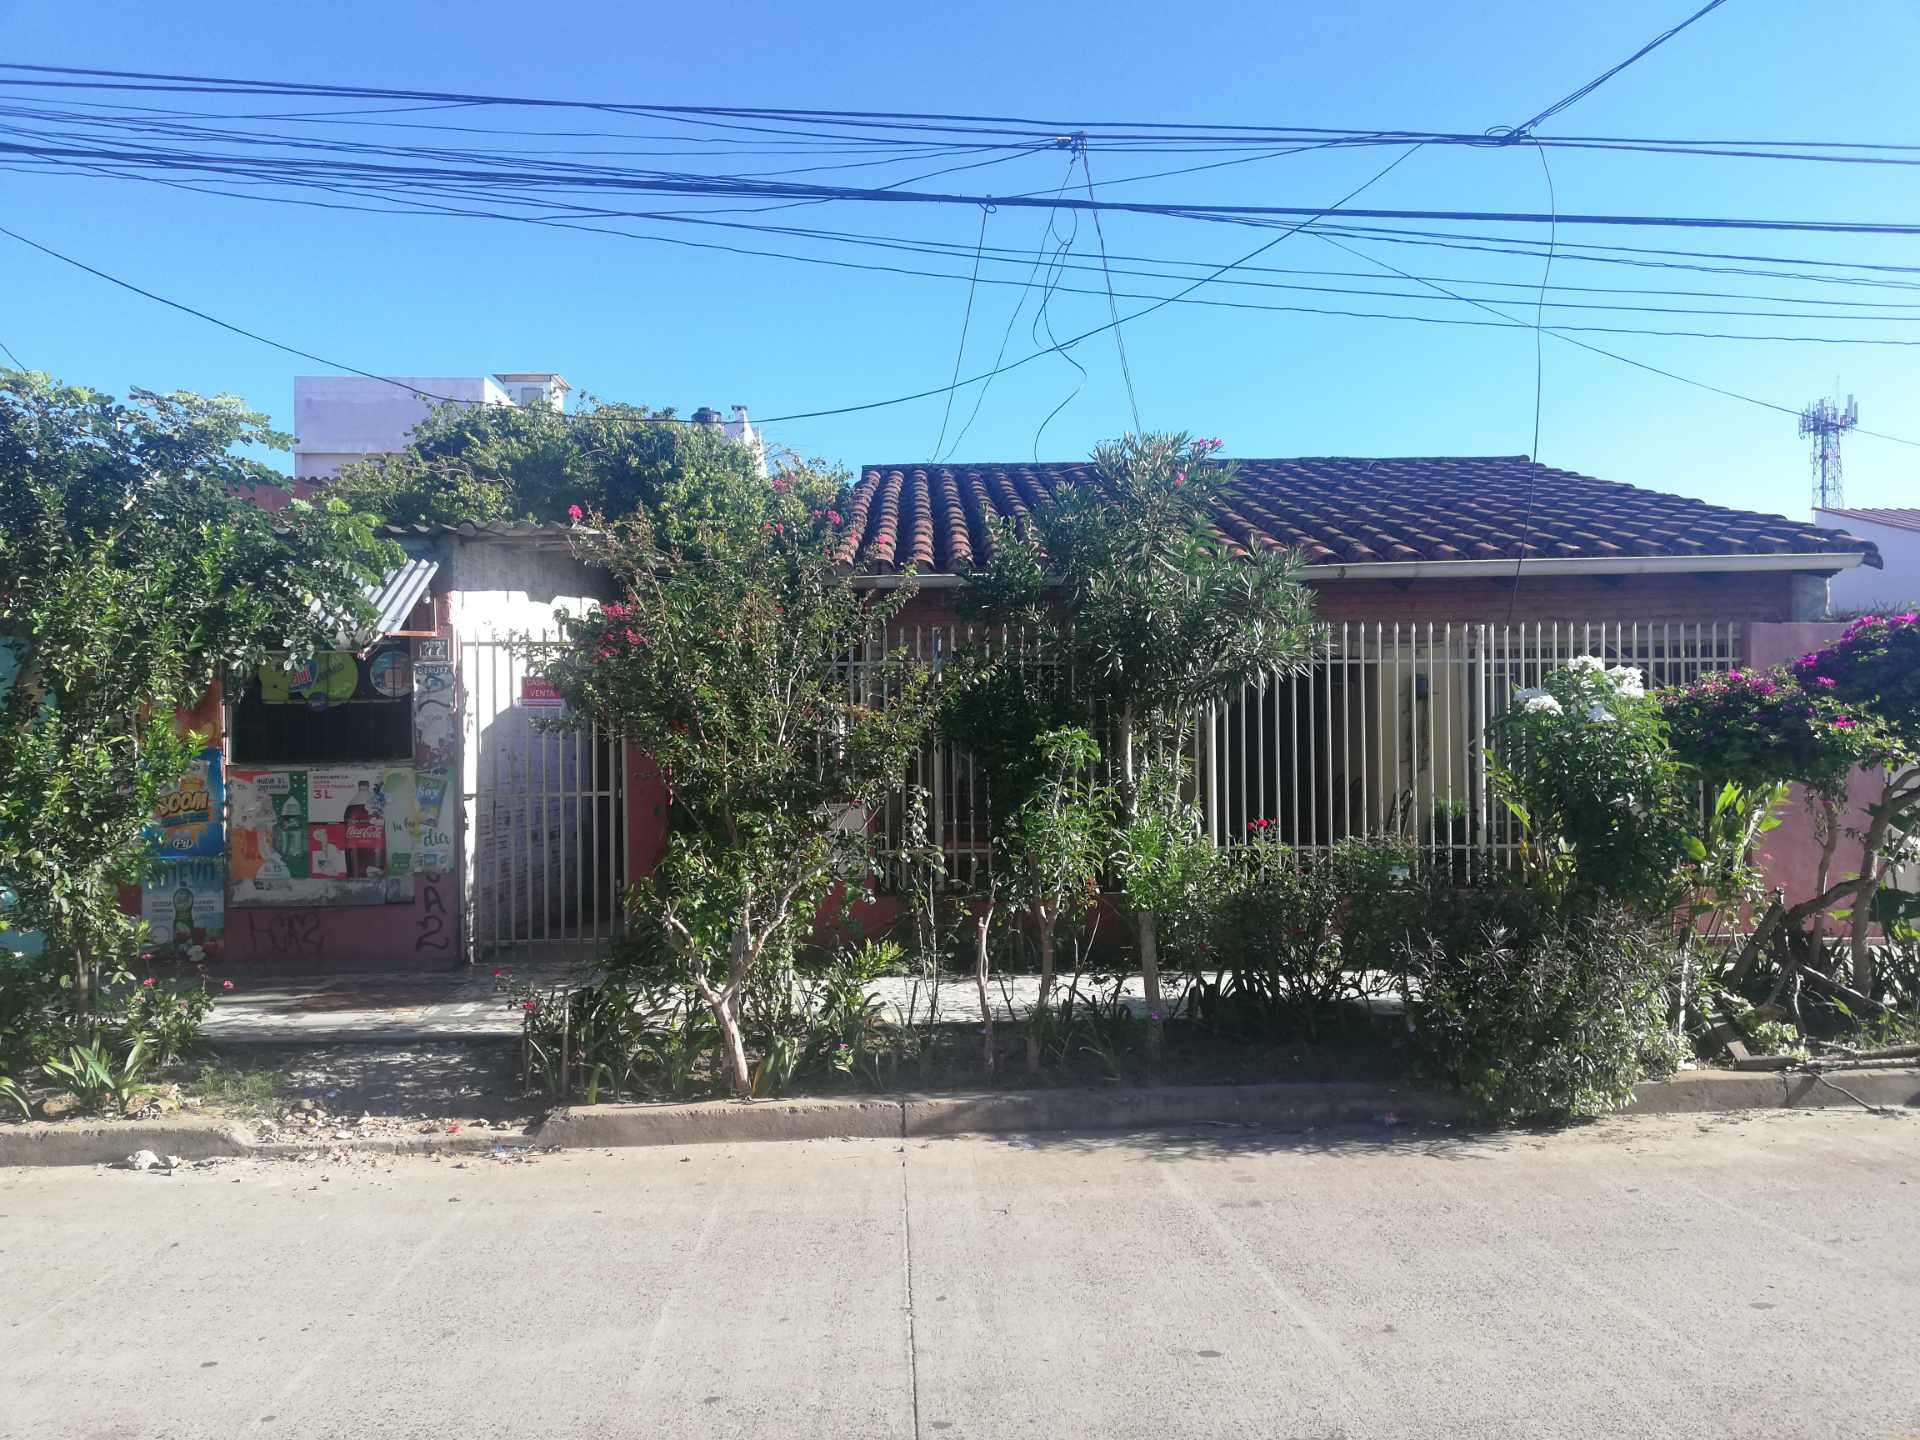 Casa en VentaBarrio oriental calle tordos 3, número de casa 77  Foto 1